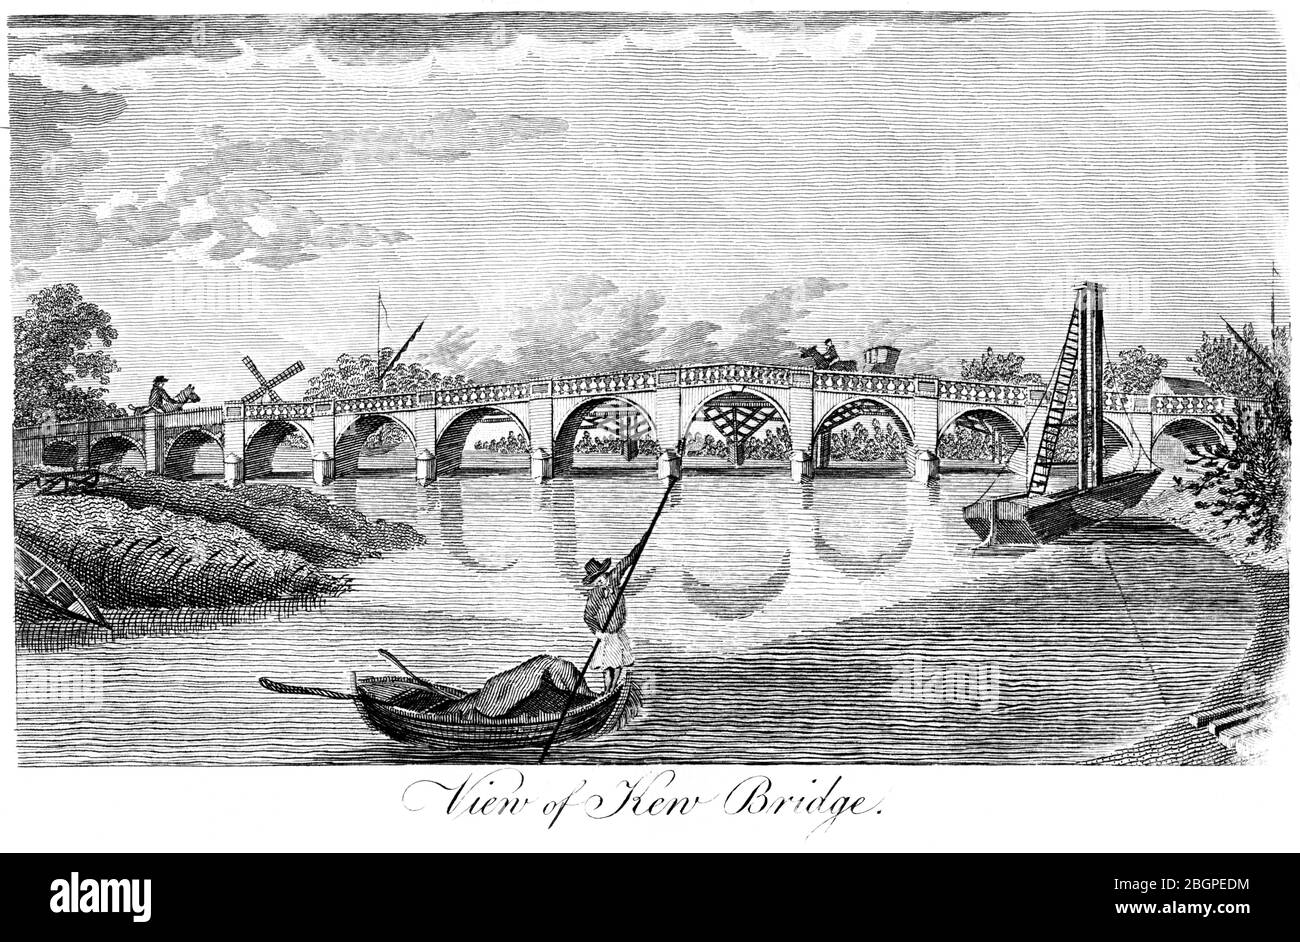 Eine Gravur von Kew Bridge, gescannt in hoher Auflösung aus einem Buch, das 1827 gedruckt wurde. Dieses Bild ist frei von allen Copyright-Einschränkungen. Stockfoto